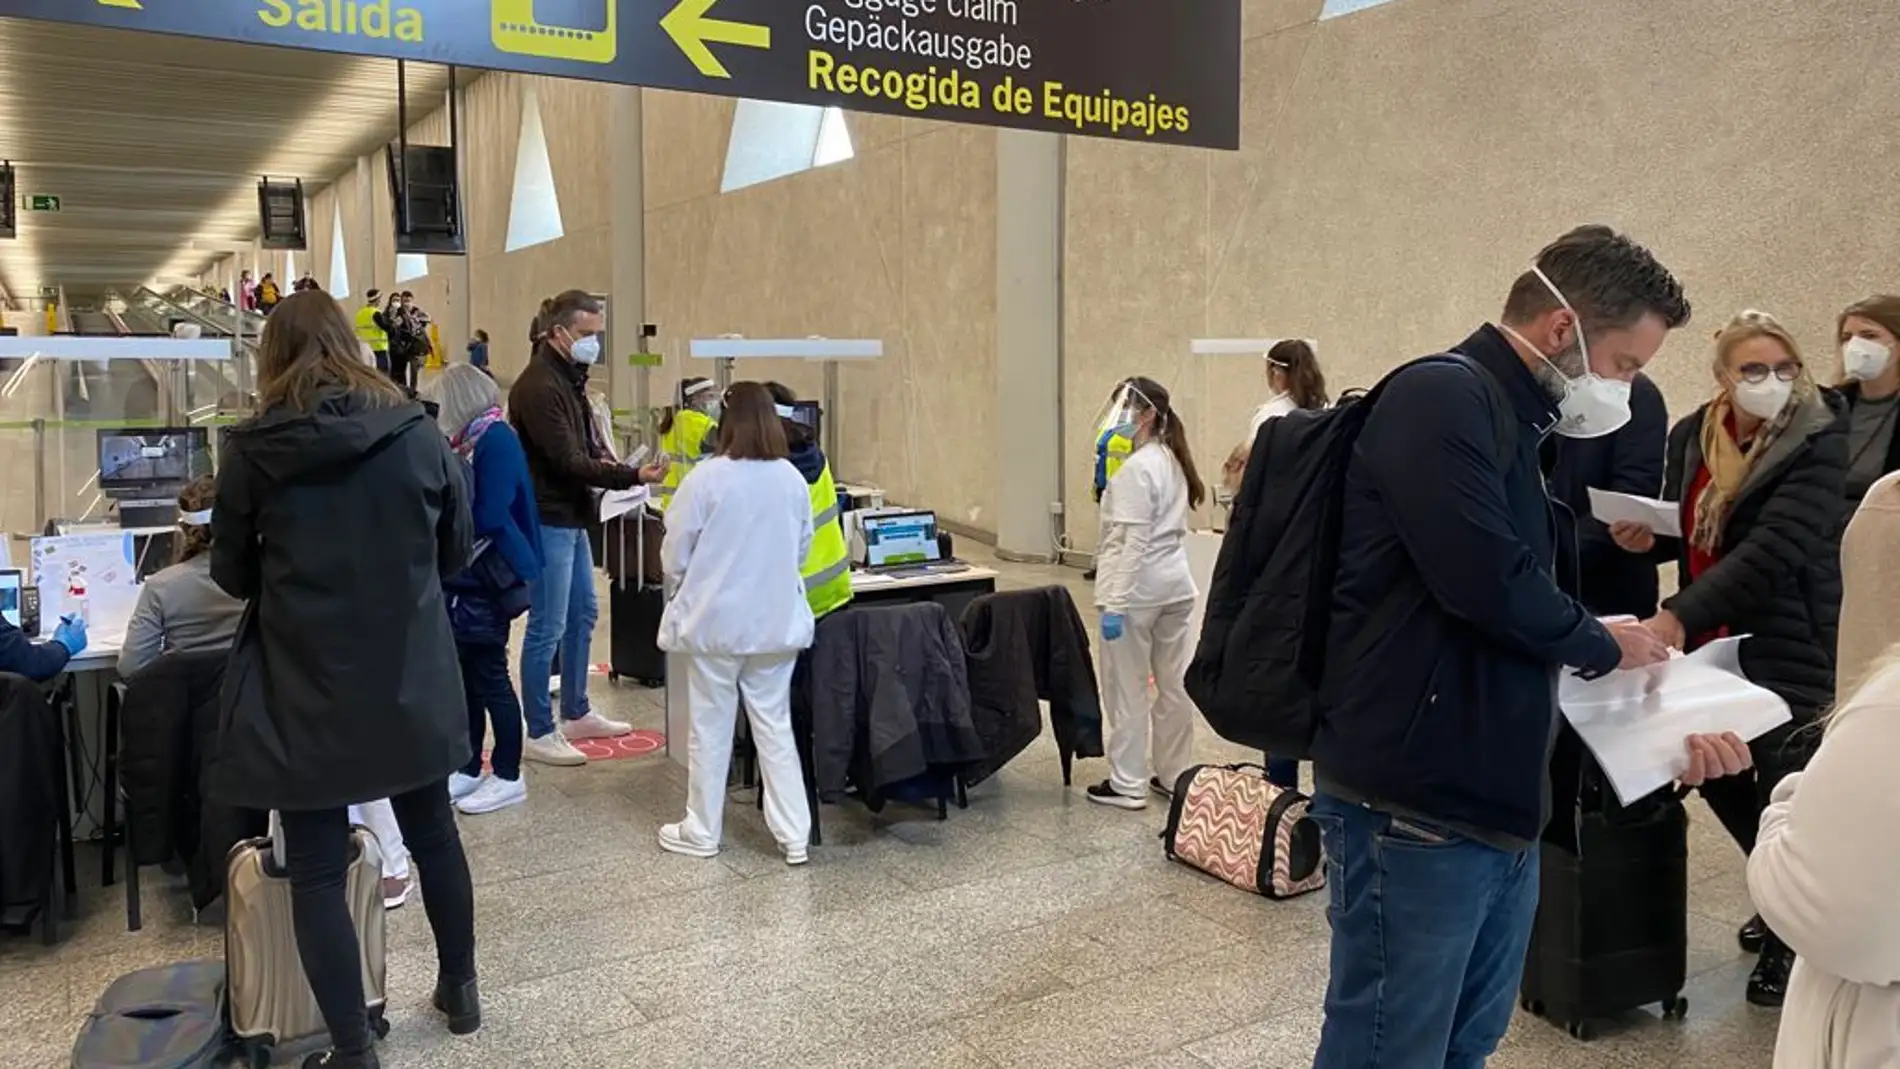 Sanidad Exterior realiza el control de pasajeros de vuelos internacionales en el aeropuerto de Son Sant Joan de Mallorca para verificar que cuentan con una PCR negativa